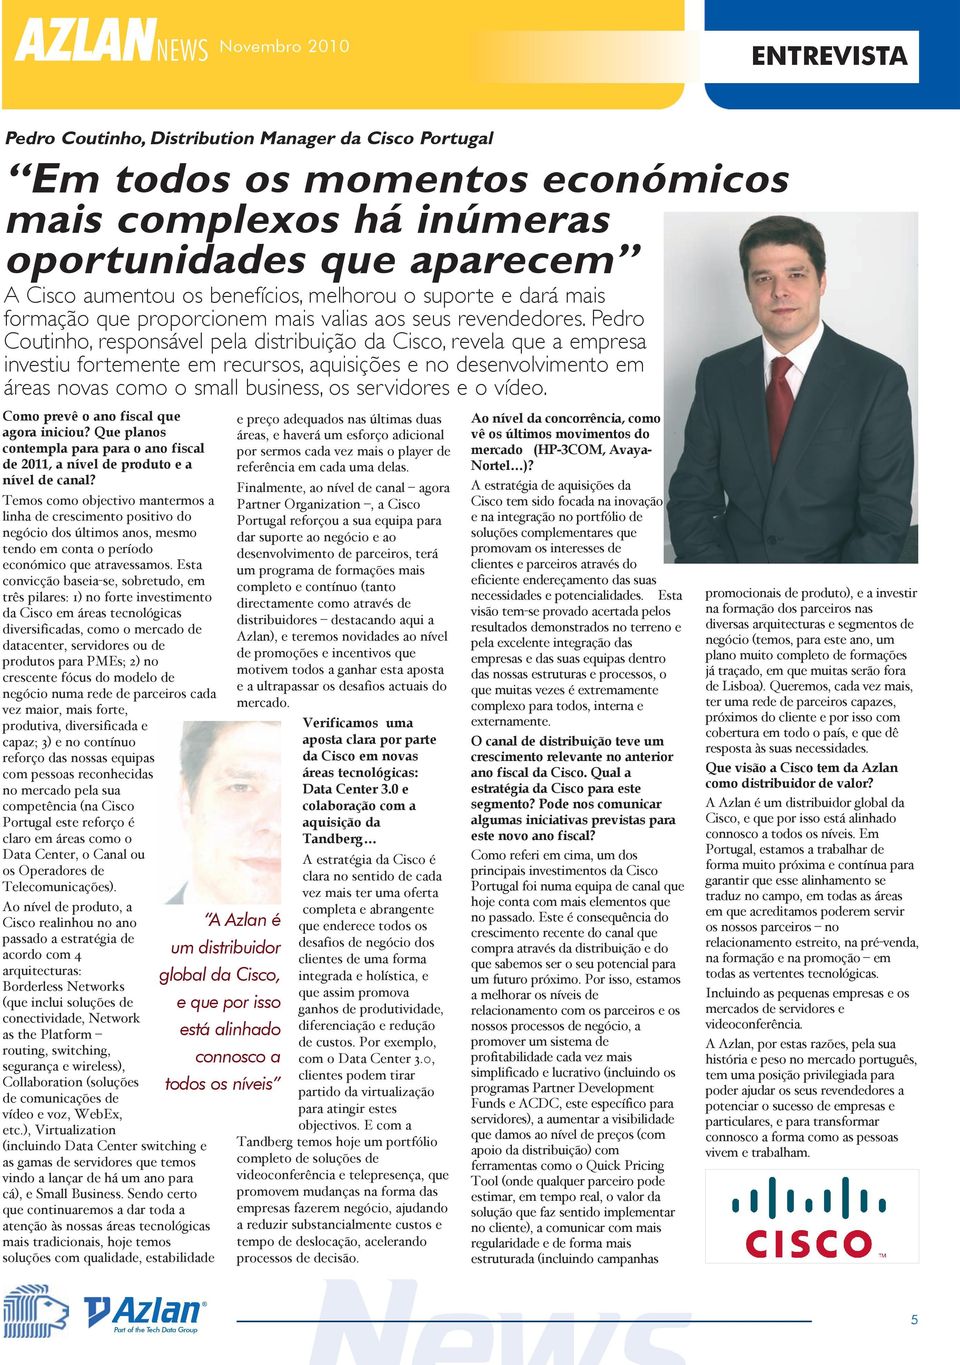 Pedro Coutinho, responsável pela distribuição da Cisco, revela que a empresa investiu fortemente em recursos, aquisições e no desenvolvimento em áreas novas como o small business, os servidores e o